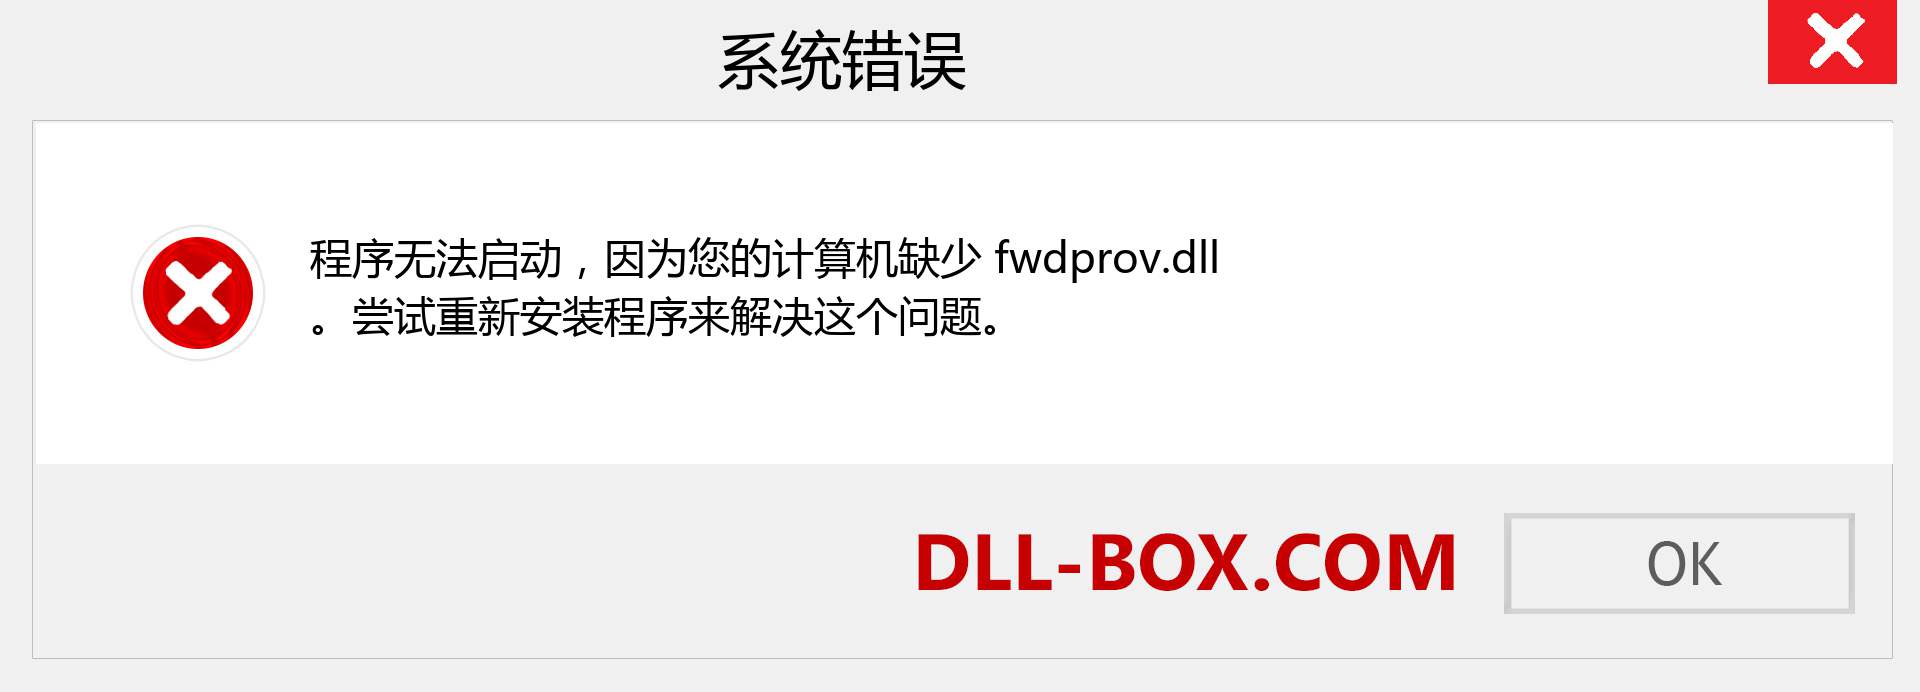 fwdprov.dll 文件丢失？。 适用于 Windows 7、8、10 的下载 - 修复 Windows、照片、图像上的 fwdprov dll 丢失错误